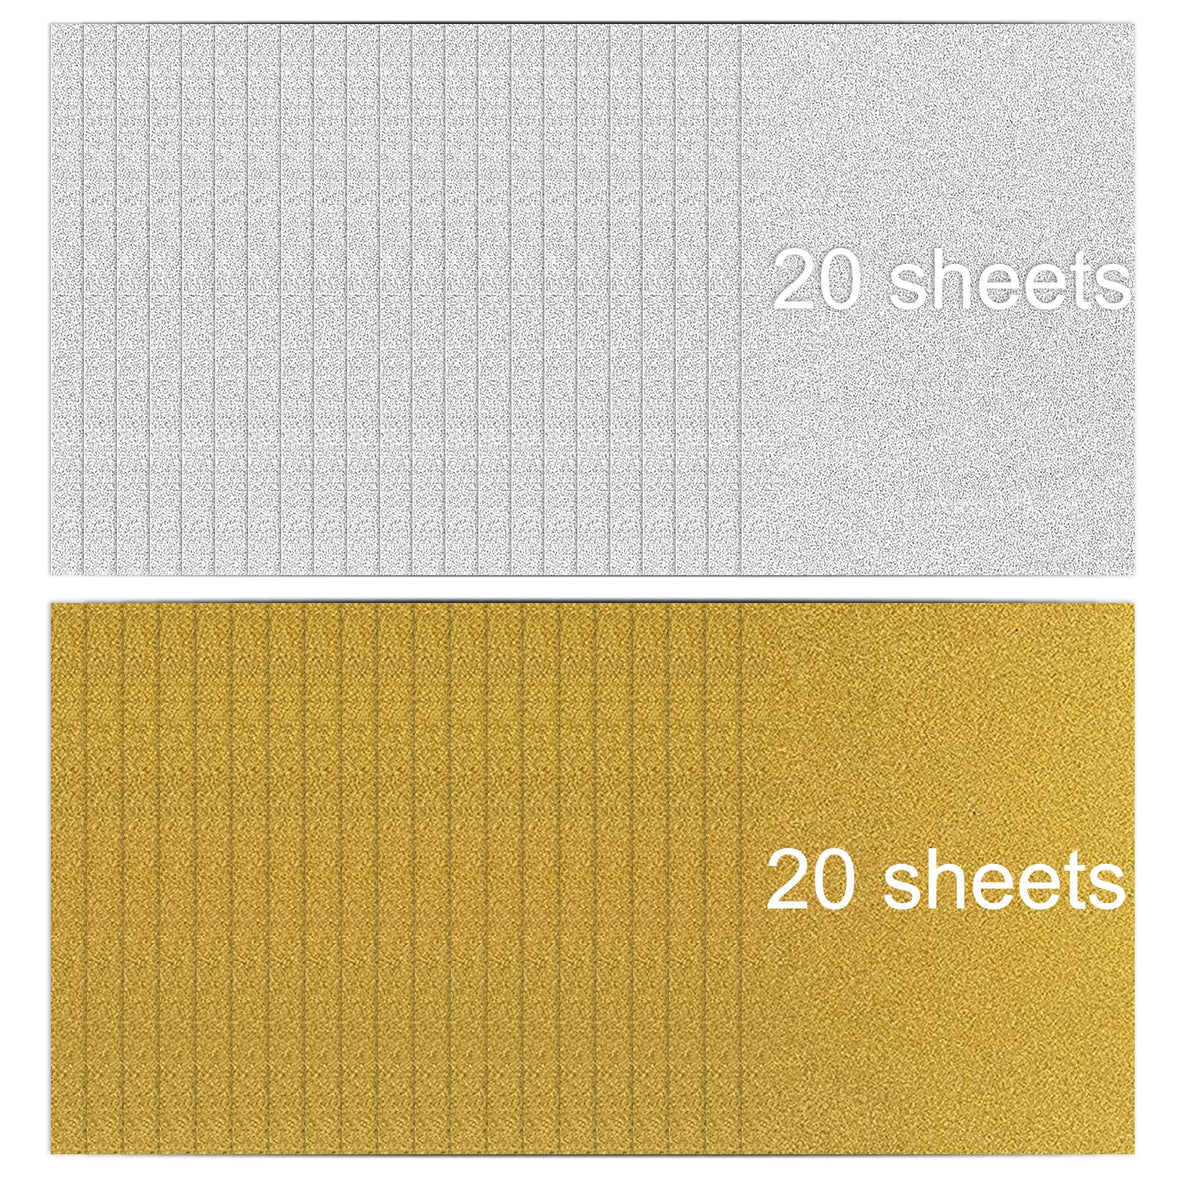 40 feuilles de papier cartonné pailleté or argent A4 papier pailleté auto-adhésif 250 g/m² pour l'artisanat